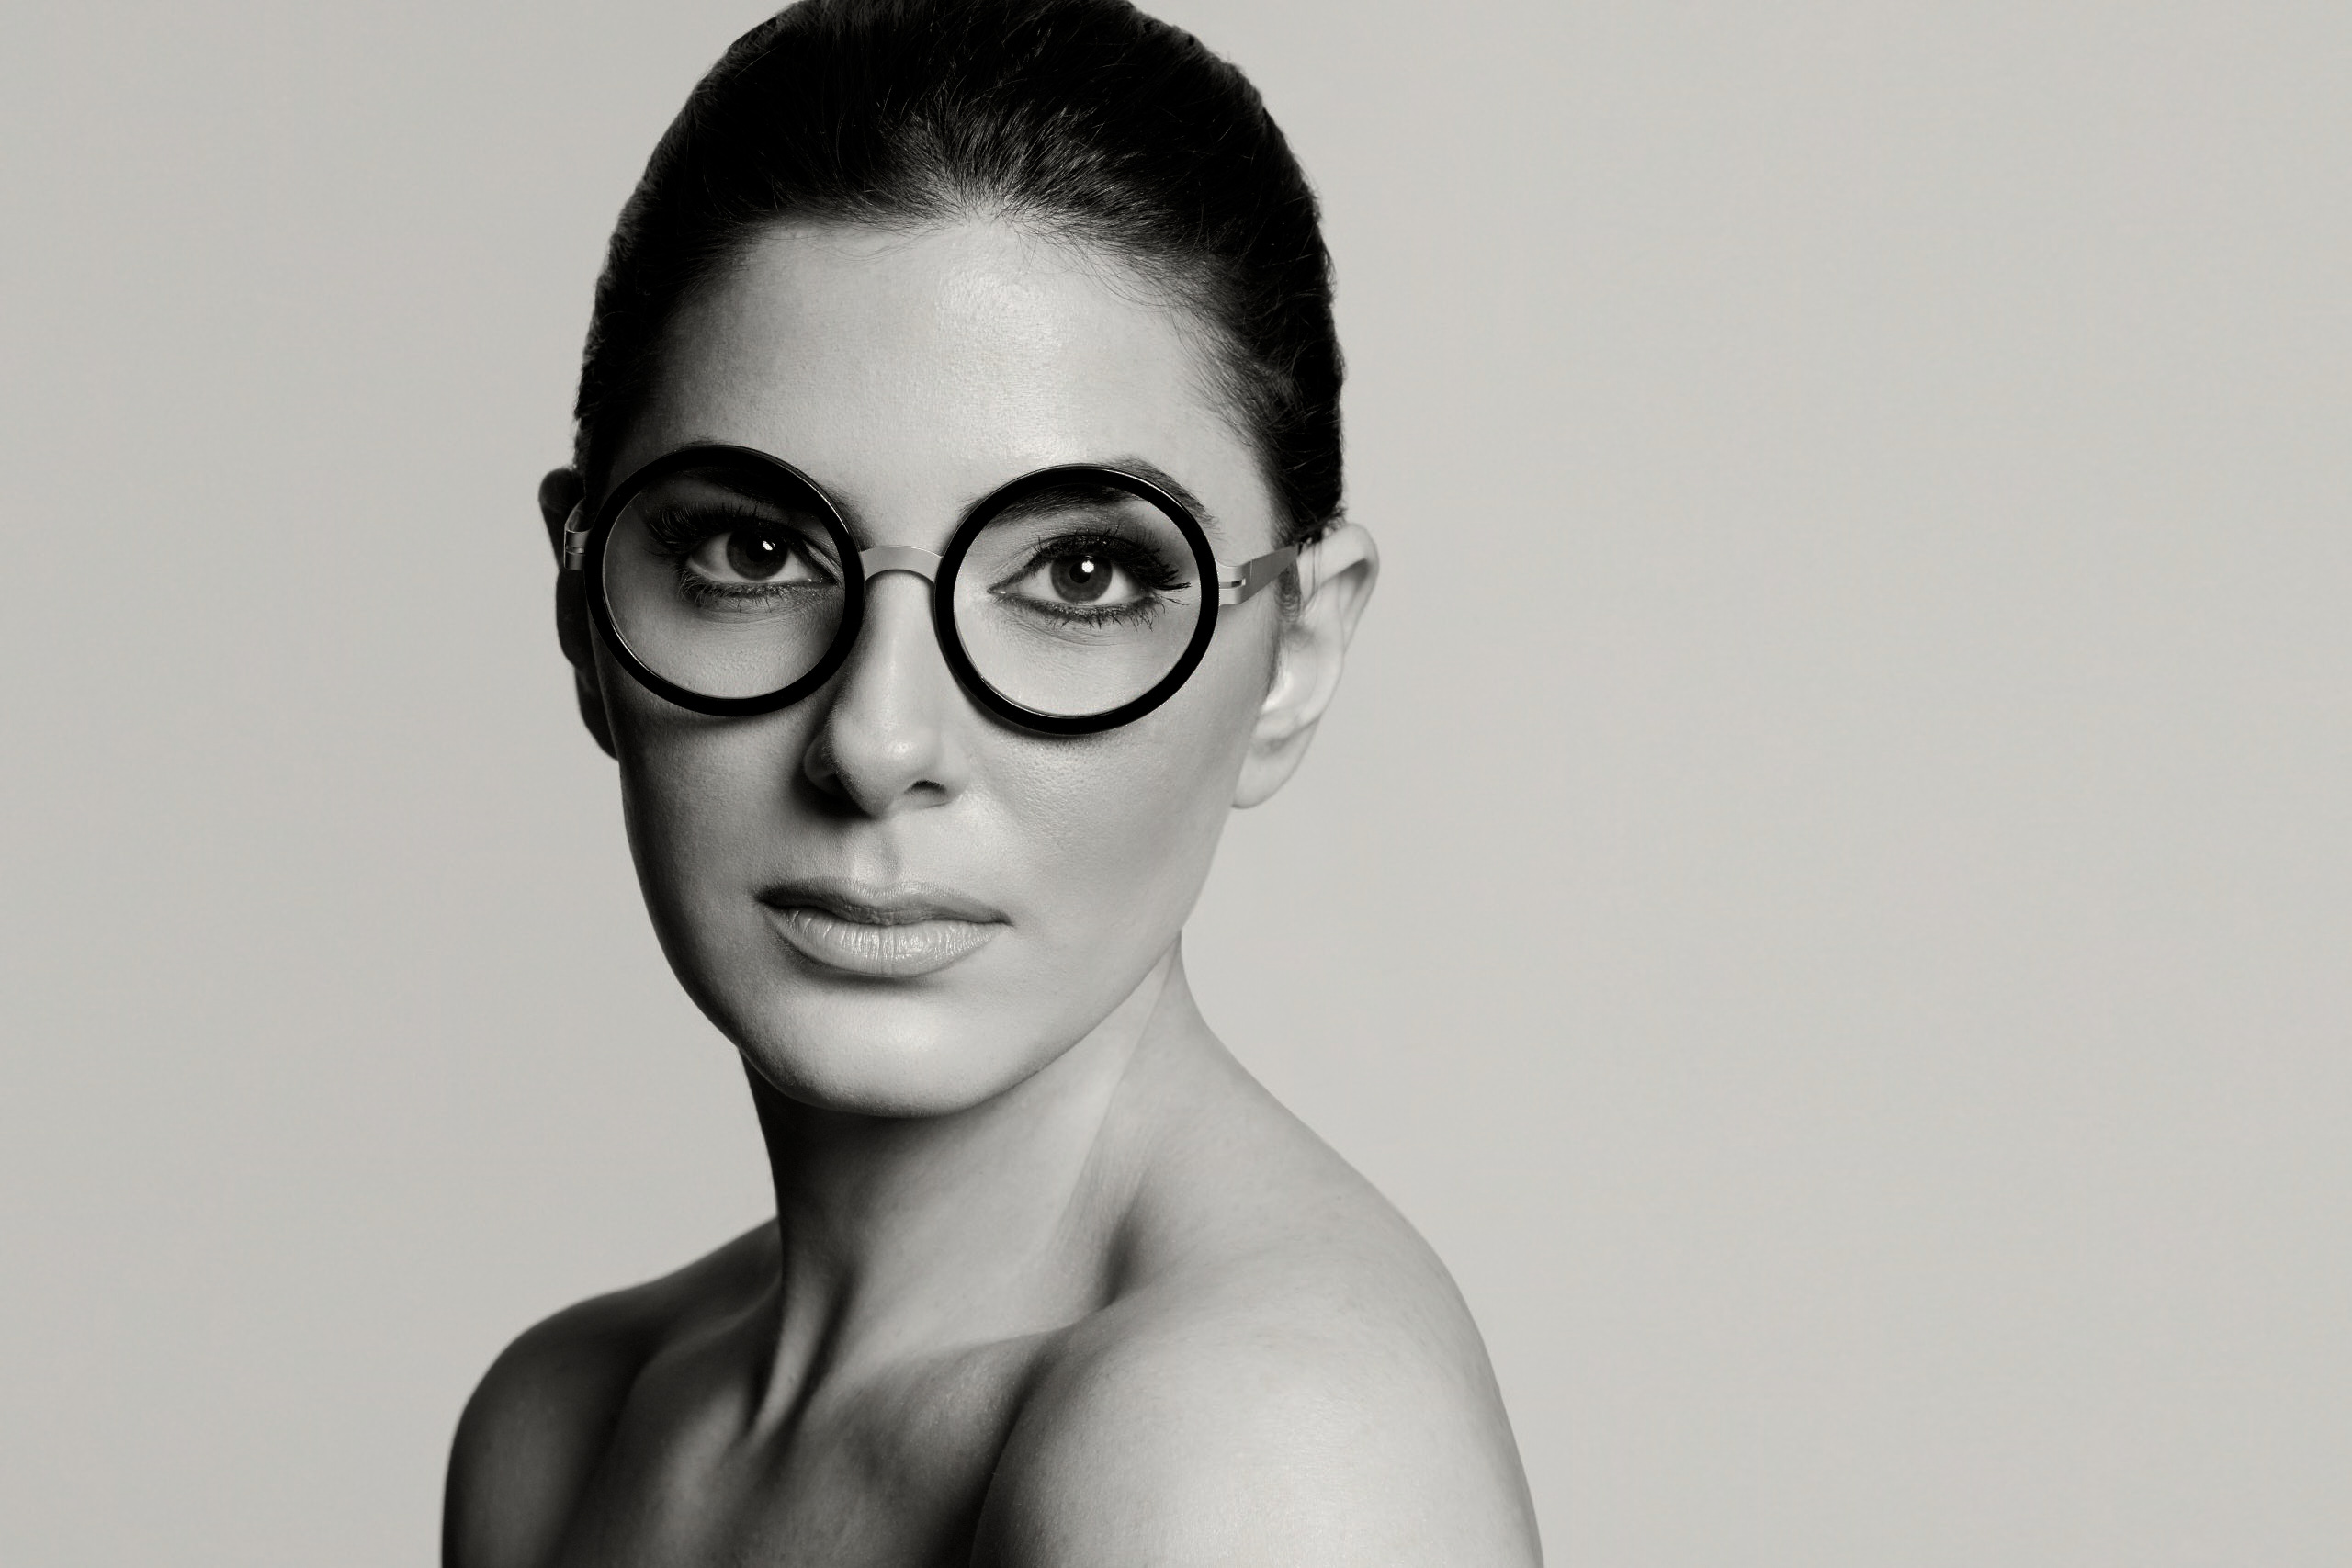 Aru Eyewear, marchio trasversale di occhialeria indipendente made in Italy, nasce nel 2019 a opera dell’estro creativo e imprenditoriale della sua ideatrice e direttrice creativa Daniela Verrazzo, in origine appassionata di progettualità architettonica per via del suo background da architetto.